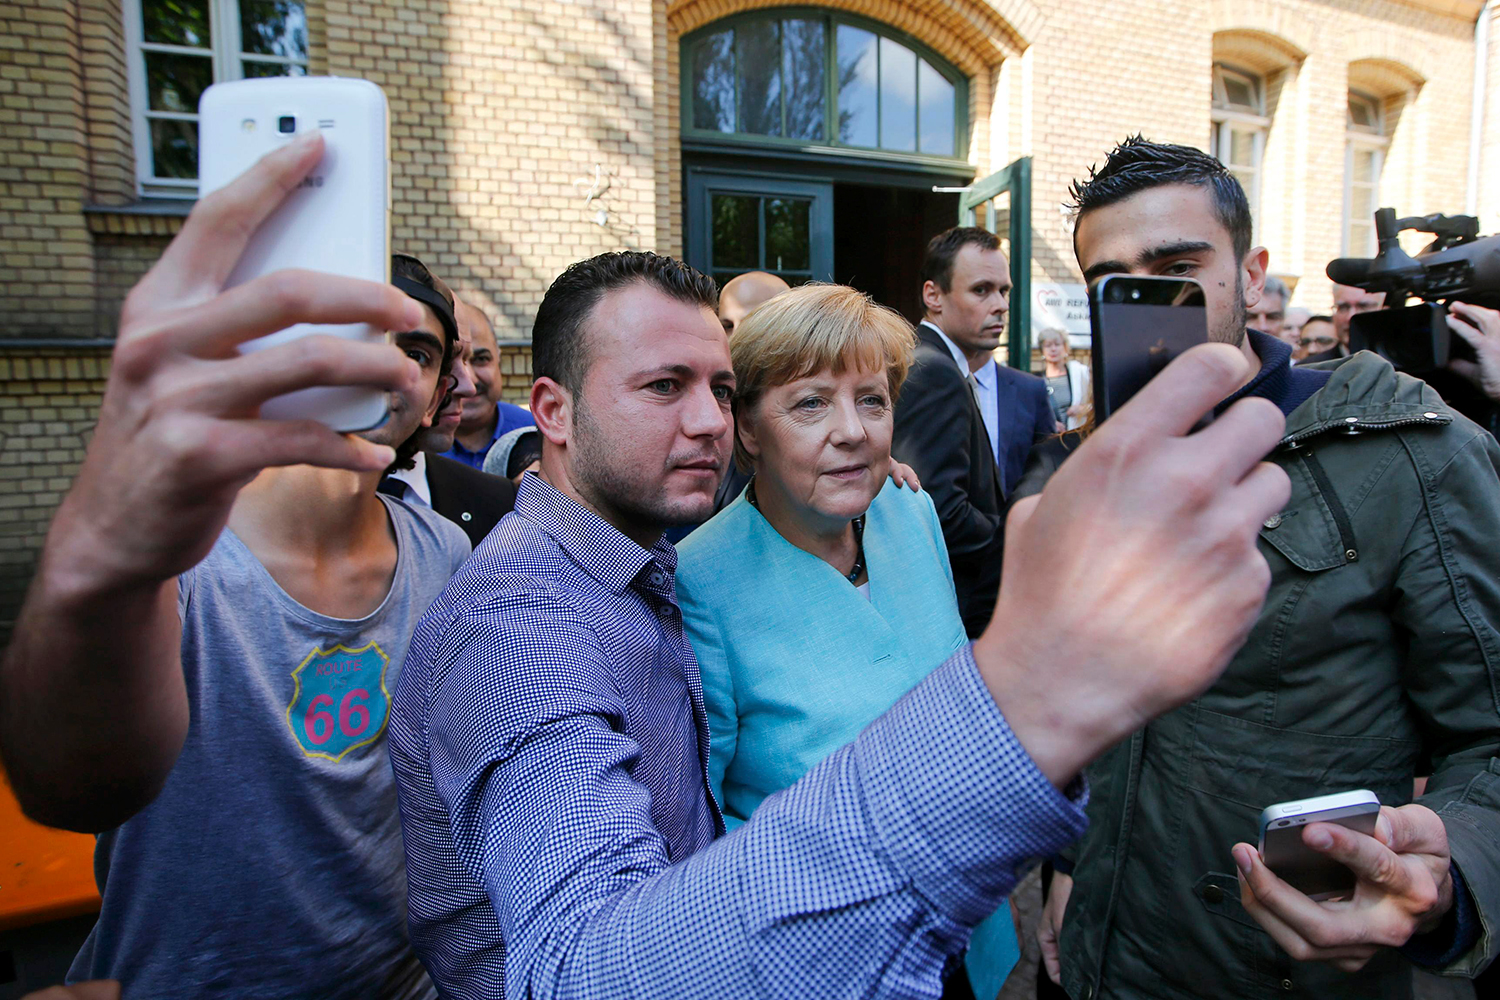 Merkel planea ‘drástica reducción’ de inmigrantes en Alemania